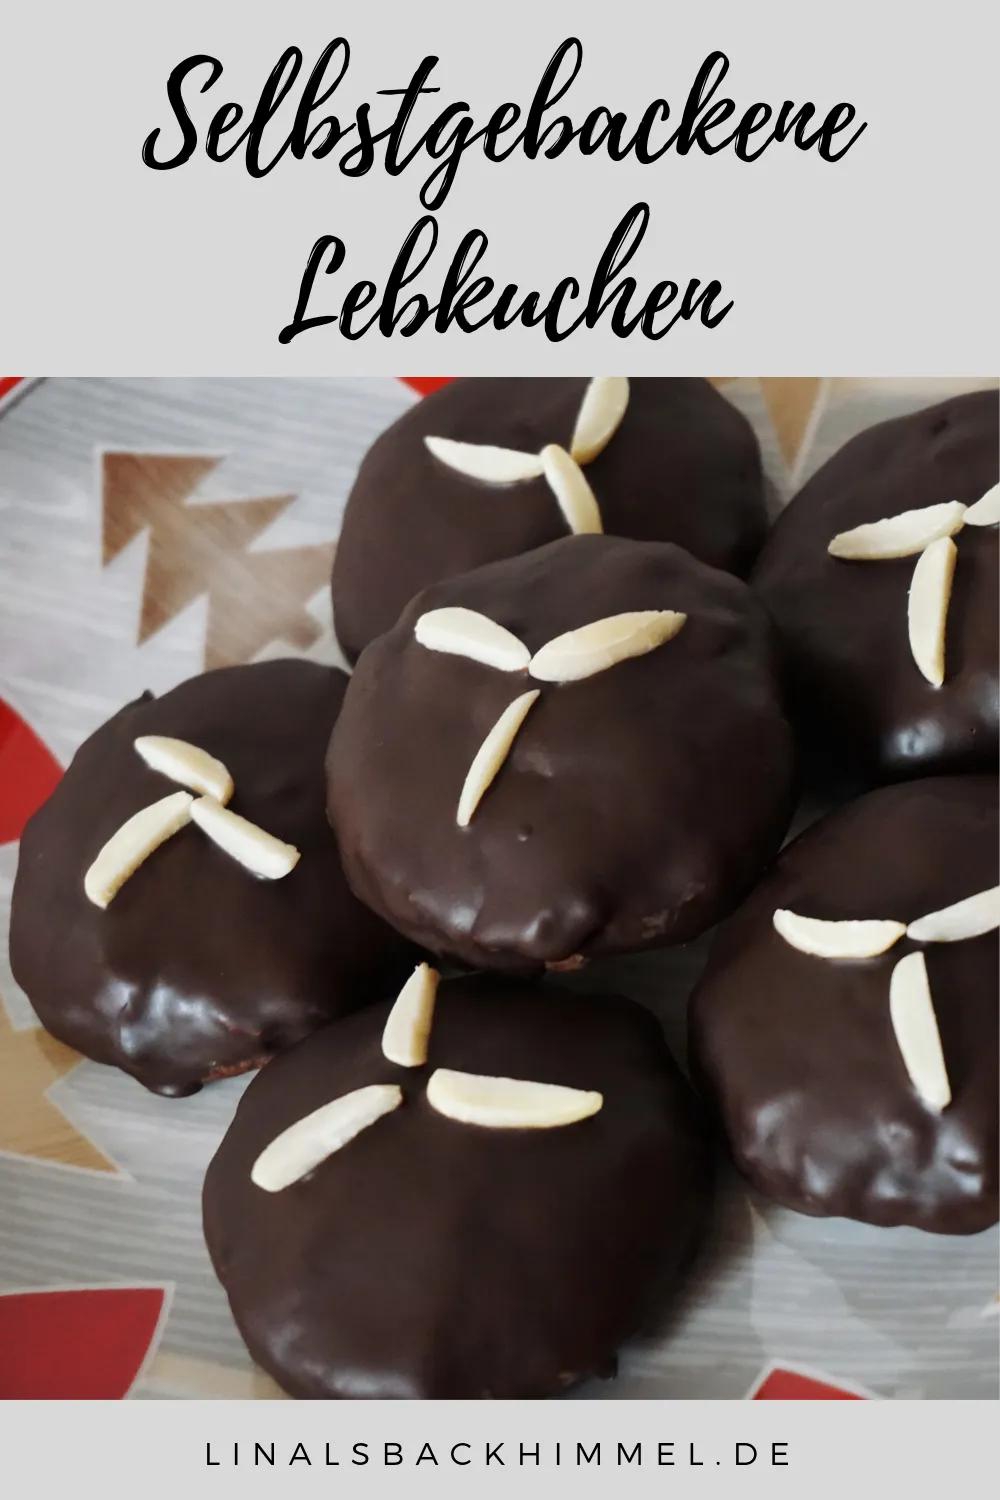 Kleine Lebkuchen mit Schoko-Guss | linalsbackhimmel.de | Lebkuchen ...